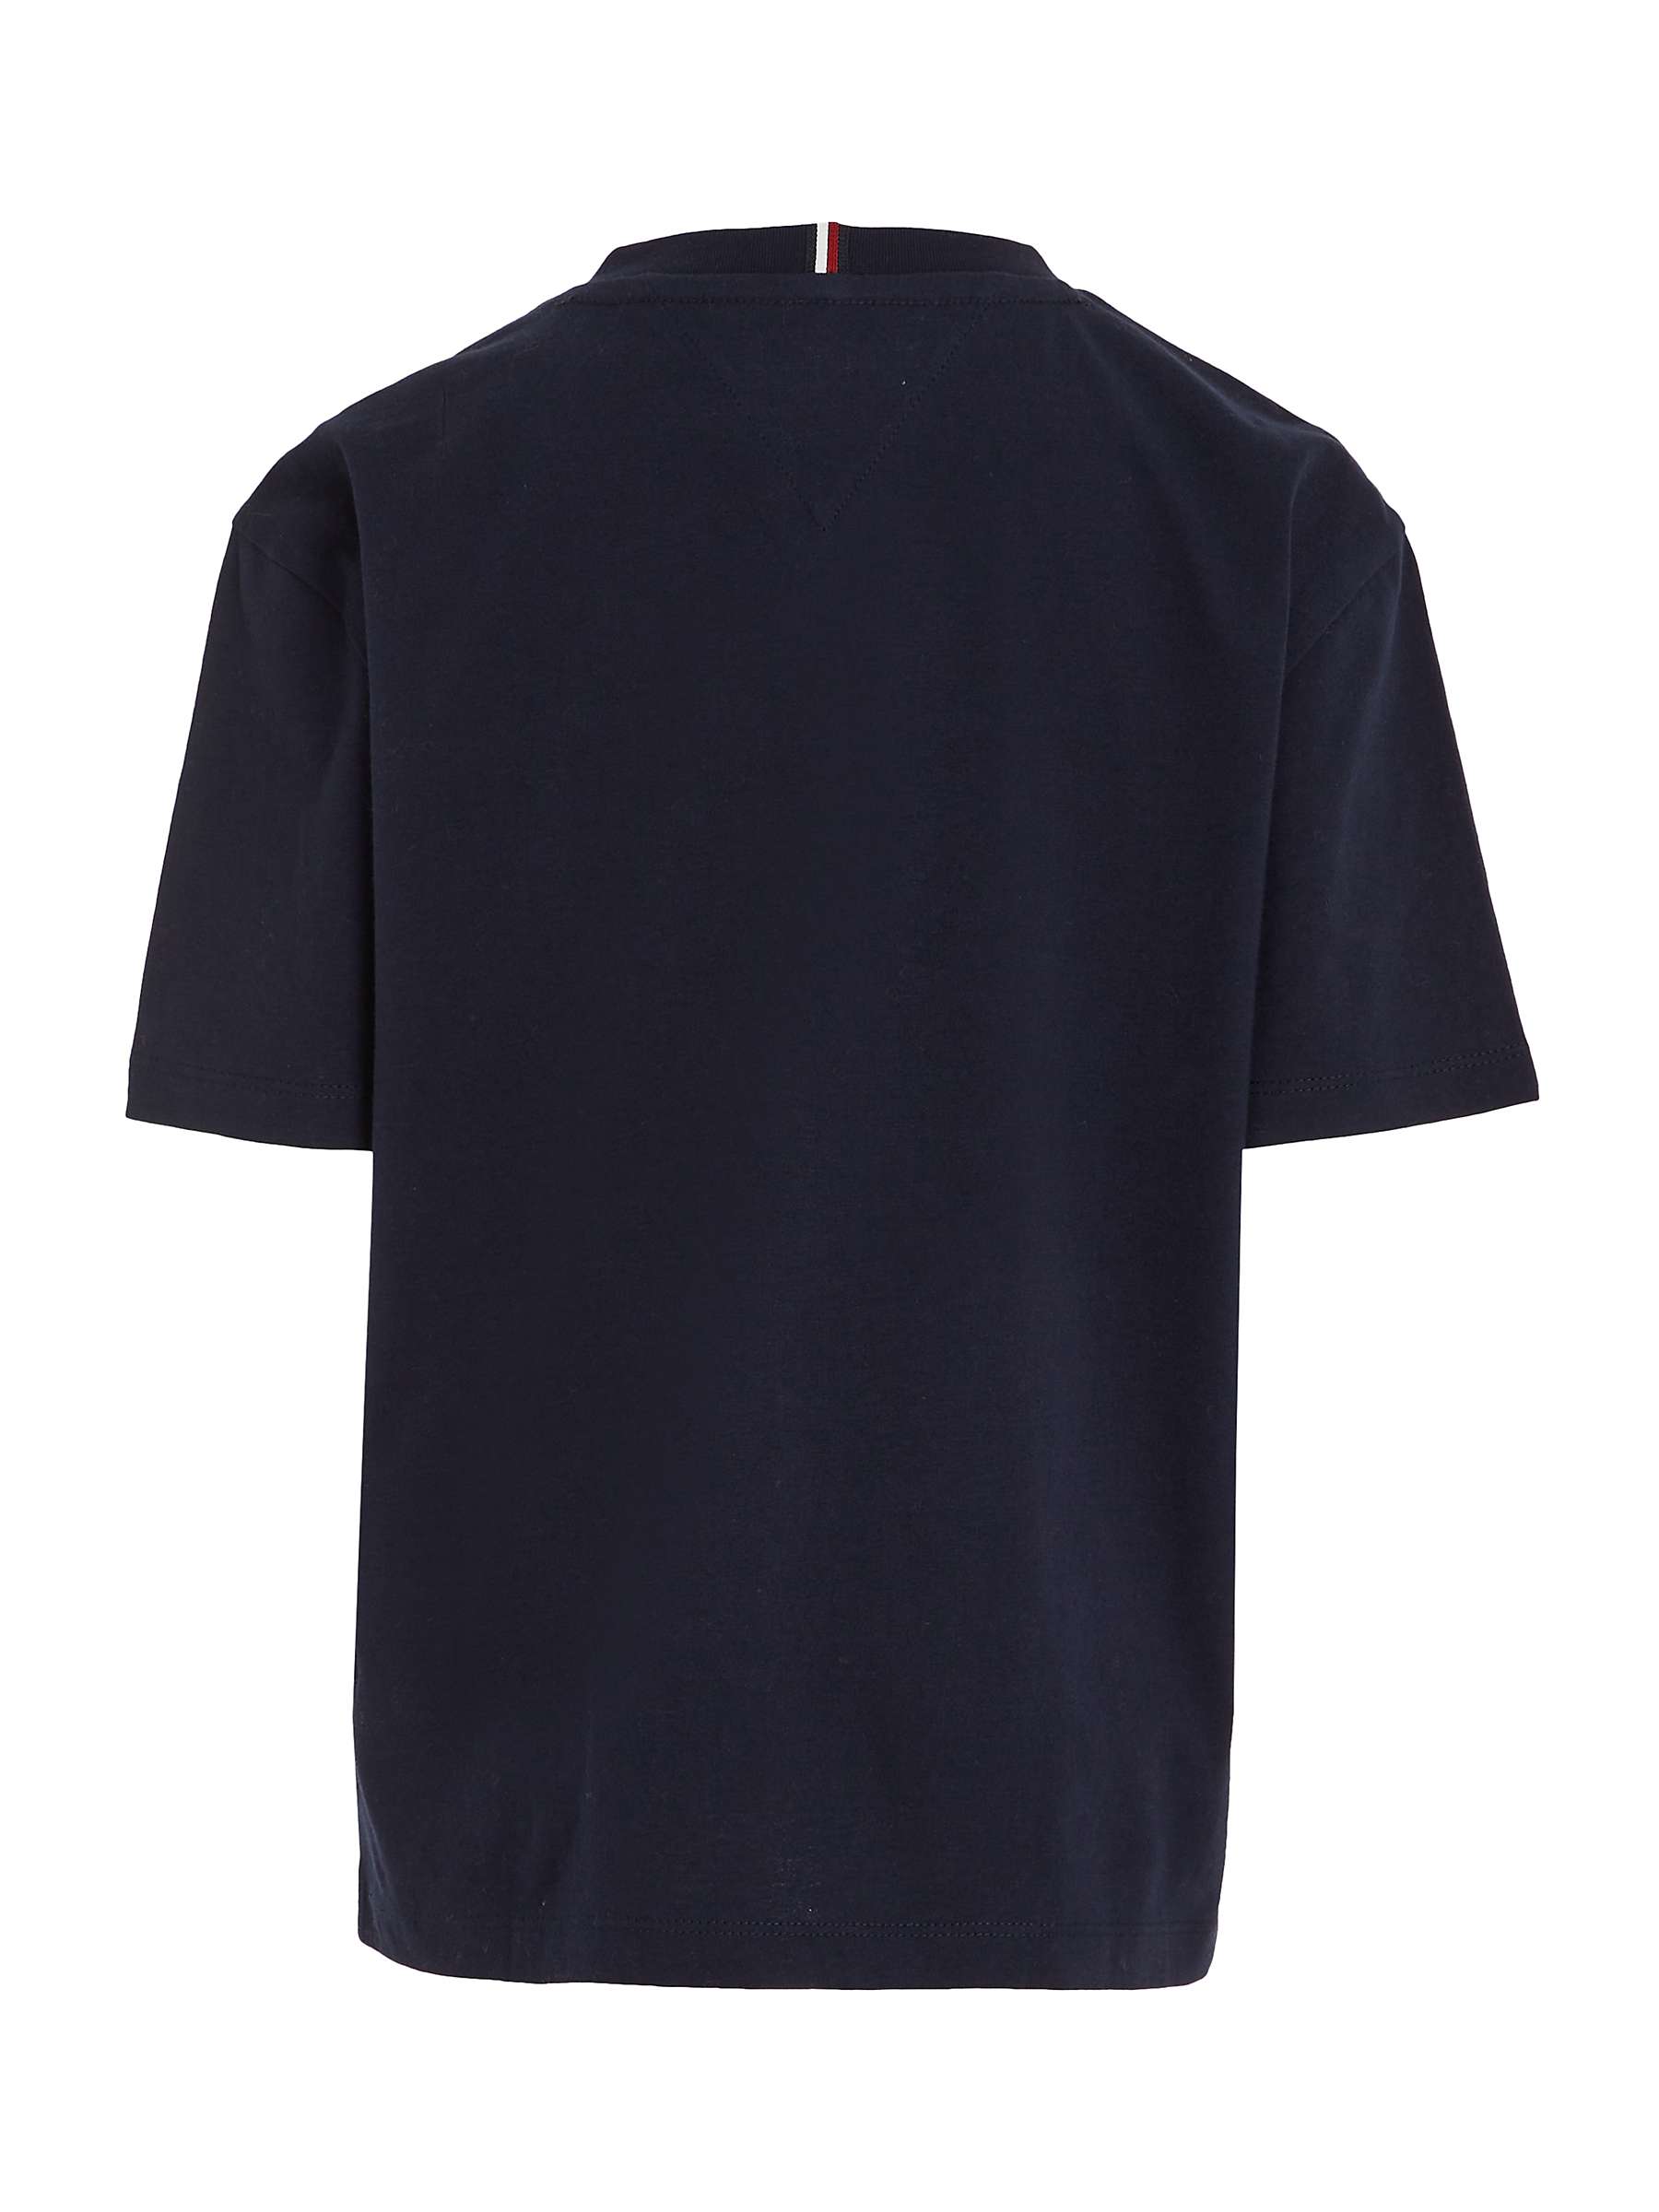 Buy Tommy Hilfiger Kids' Essential Logo Short Sleeve T-Shirt Online at johnlewis.com